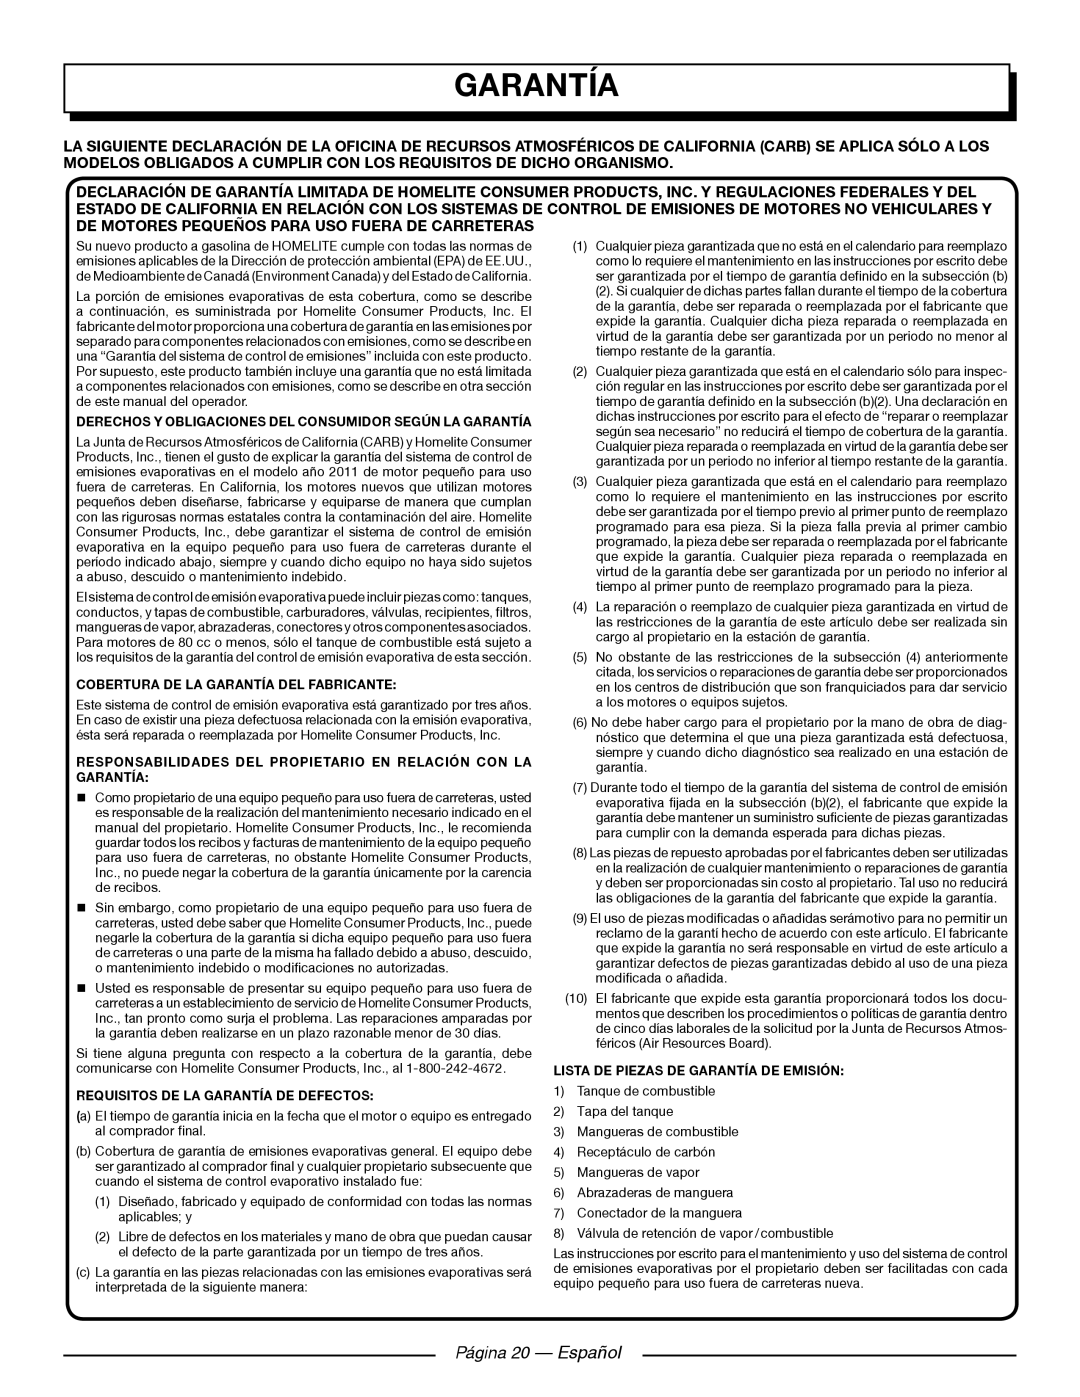 Homelite UT905011 Página 20 — Español, Cobertura De La Garantía Del Fabricante, Requisitos De La Garantía De Defectos 